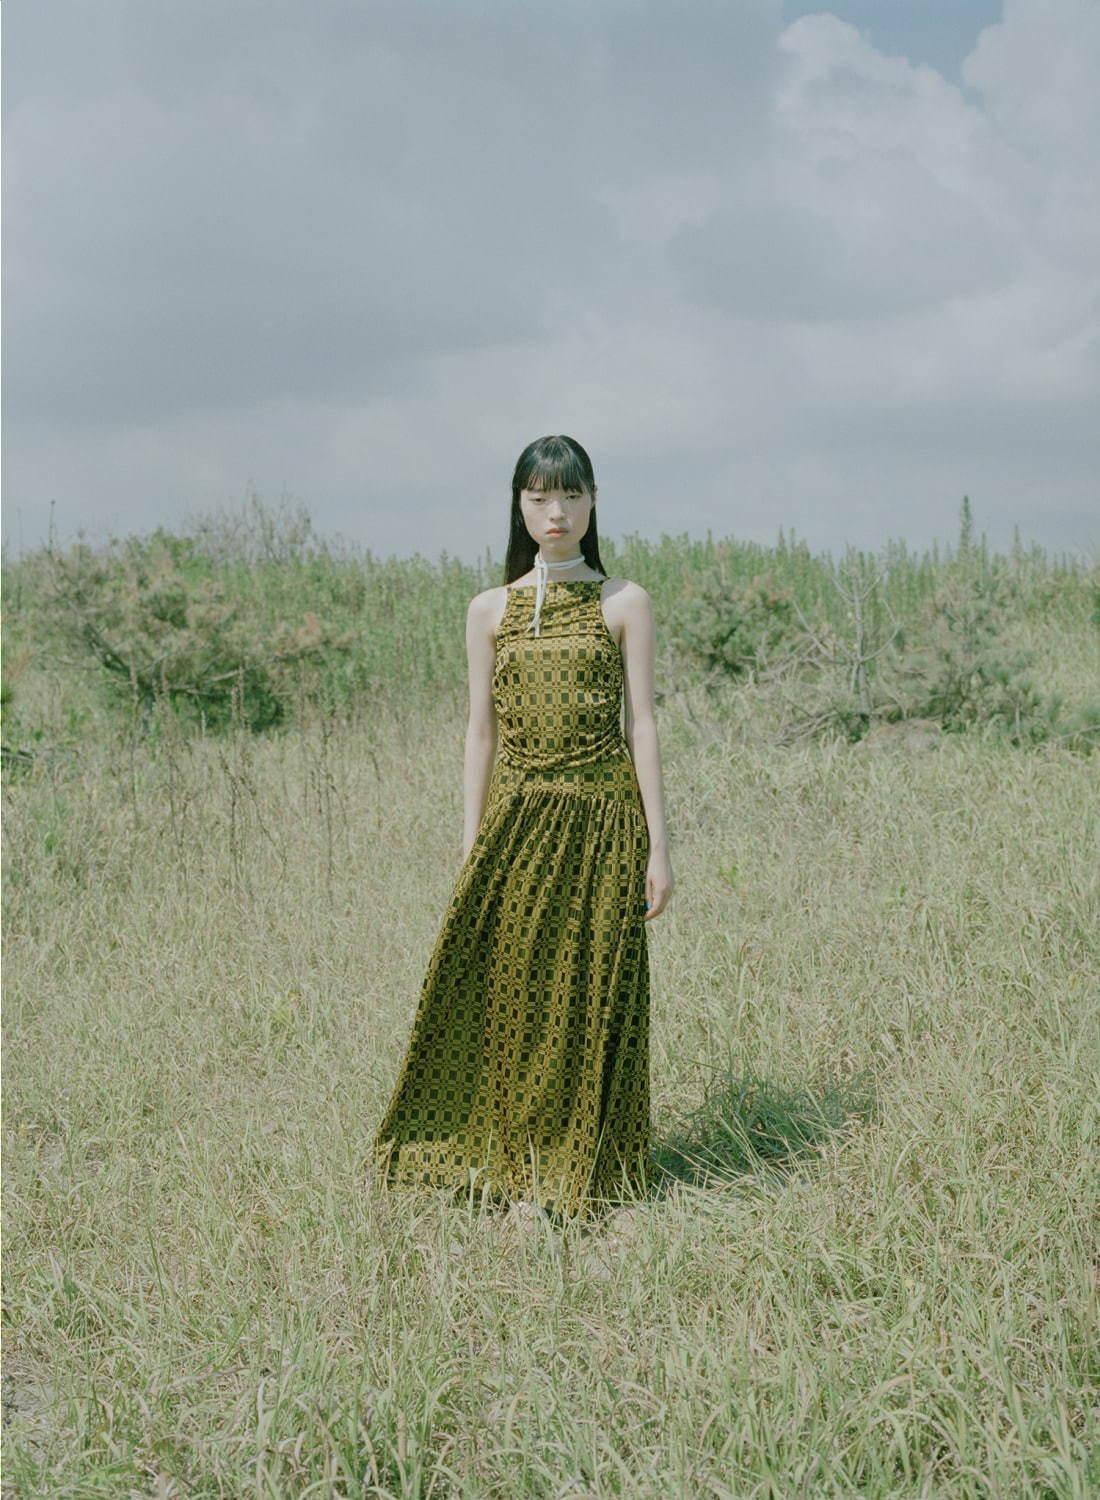 アカネ ウツノミヤ2021年春夏コレクション、一本の糸から始まるストーリー コピー